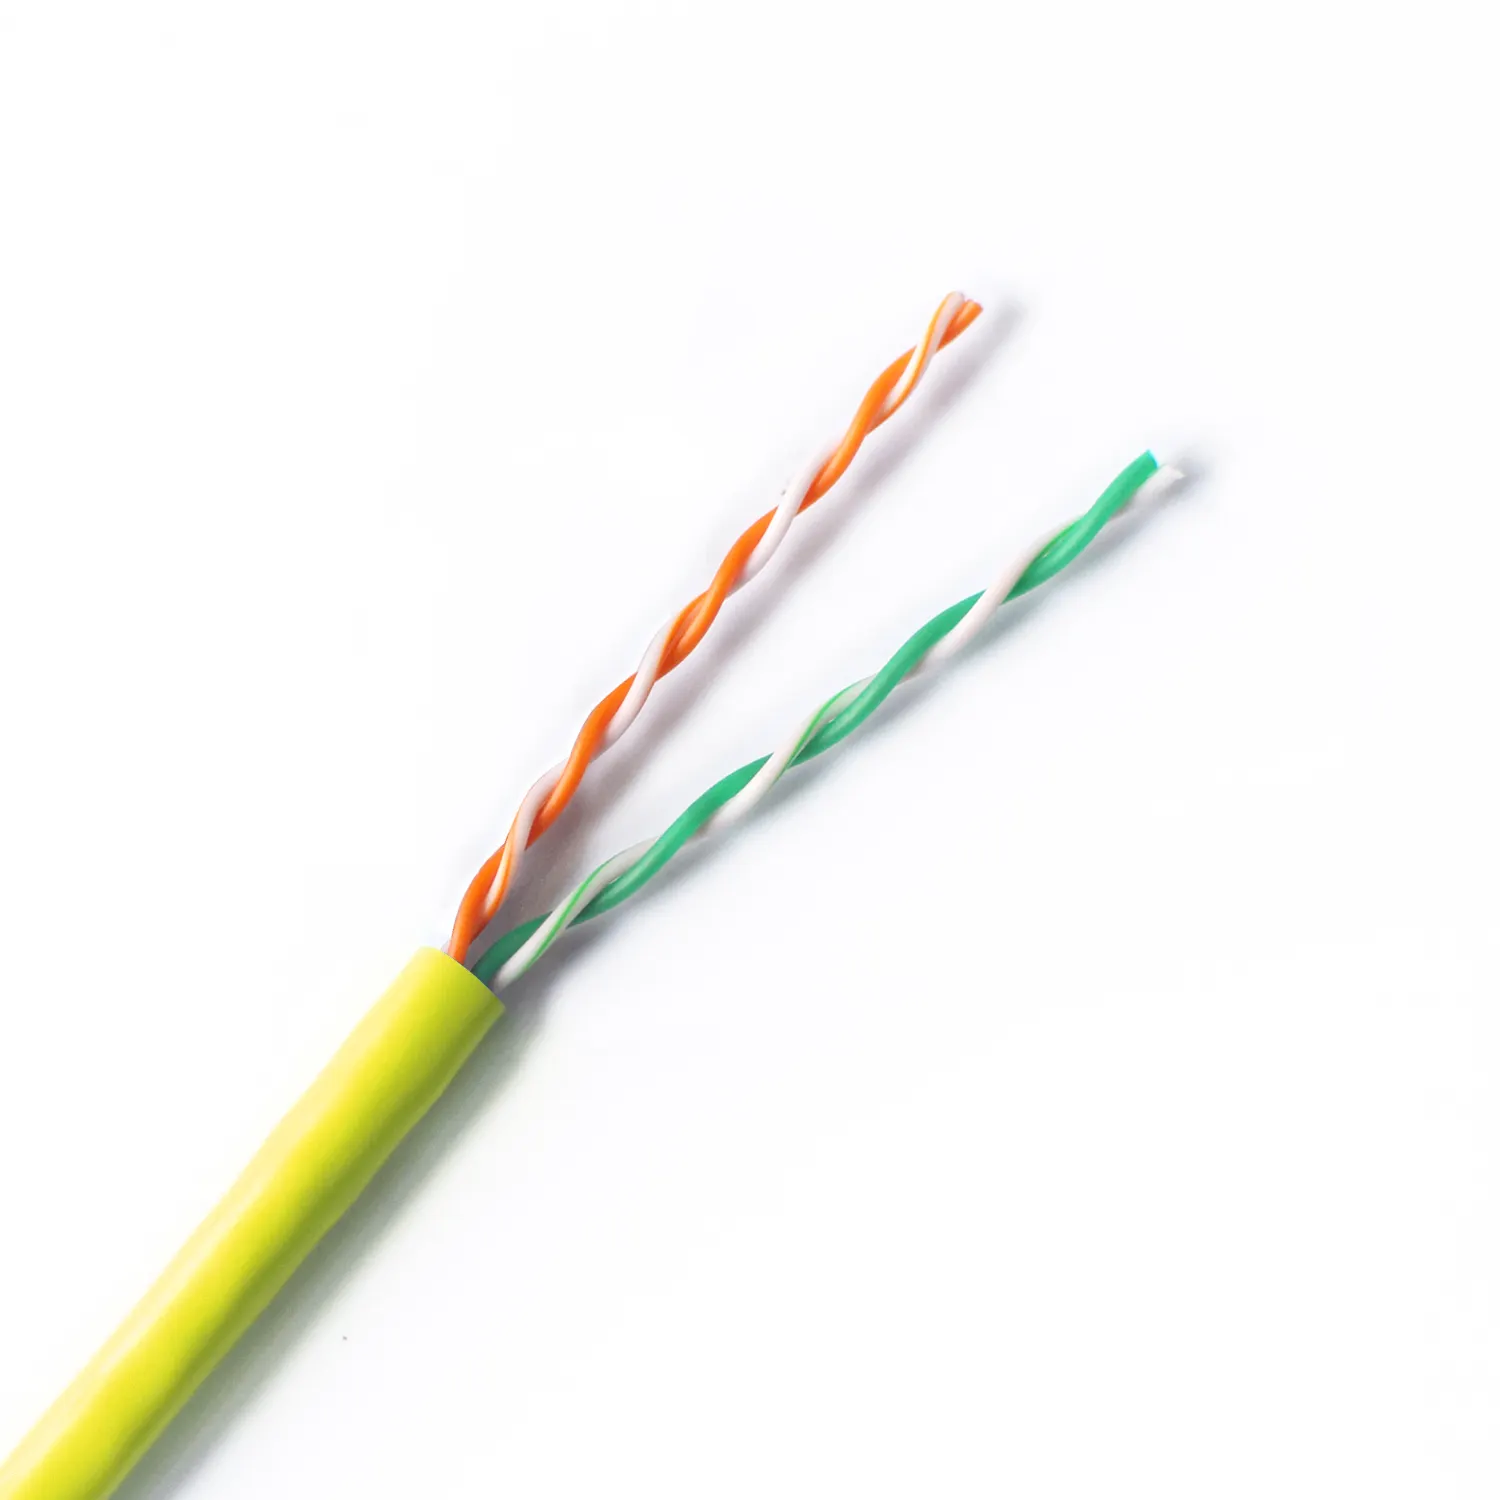 SZADP cat3 kabel dalam ruangan, kawat kabel telepon 2 pasang 4 core